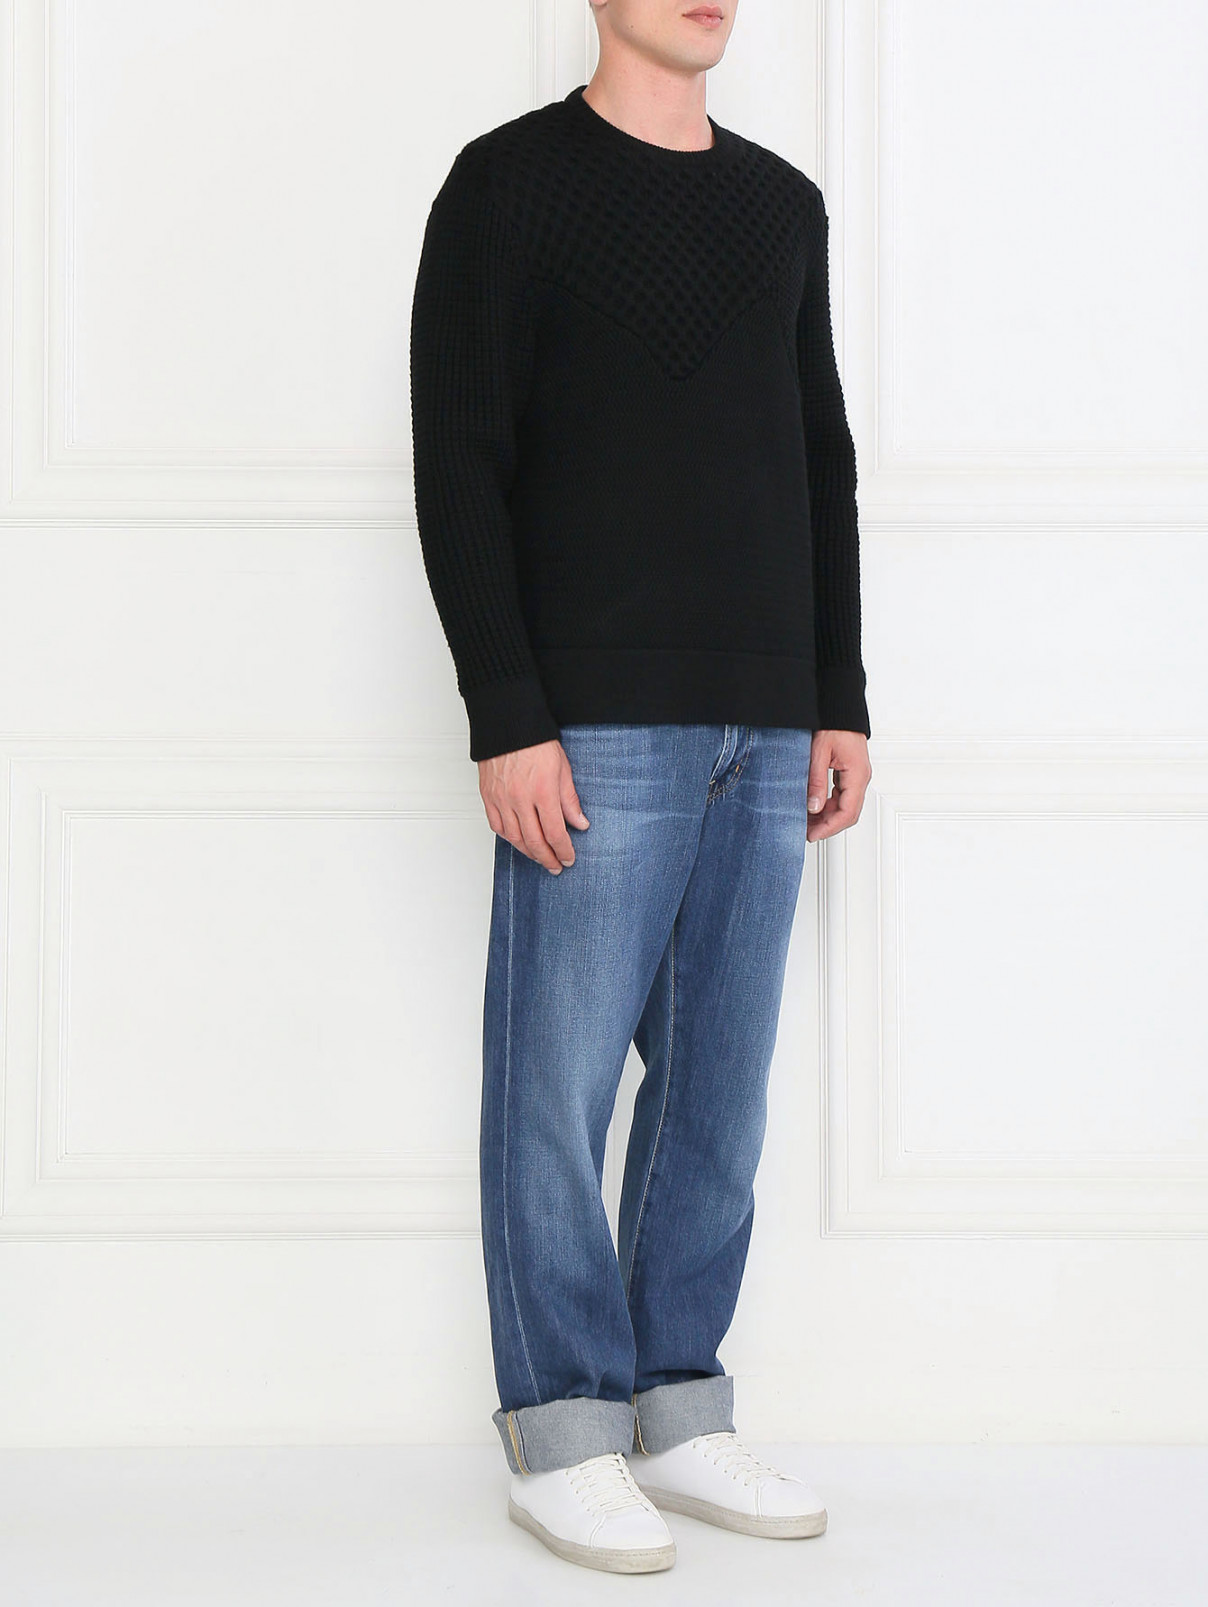 Джемпер из шерсти  крупной вязки NEIL BARRETT  –  Модель Общий вид  – Цвет:  Черный